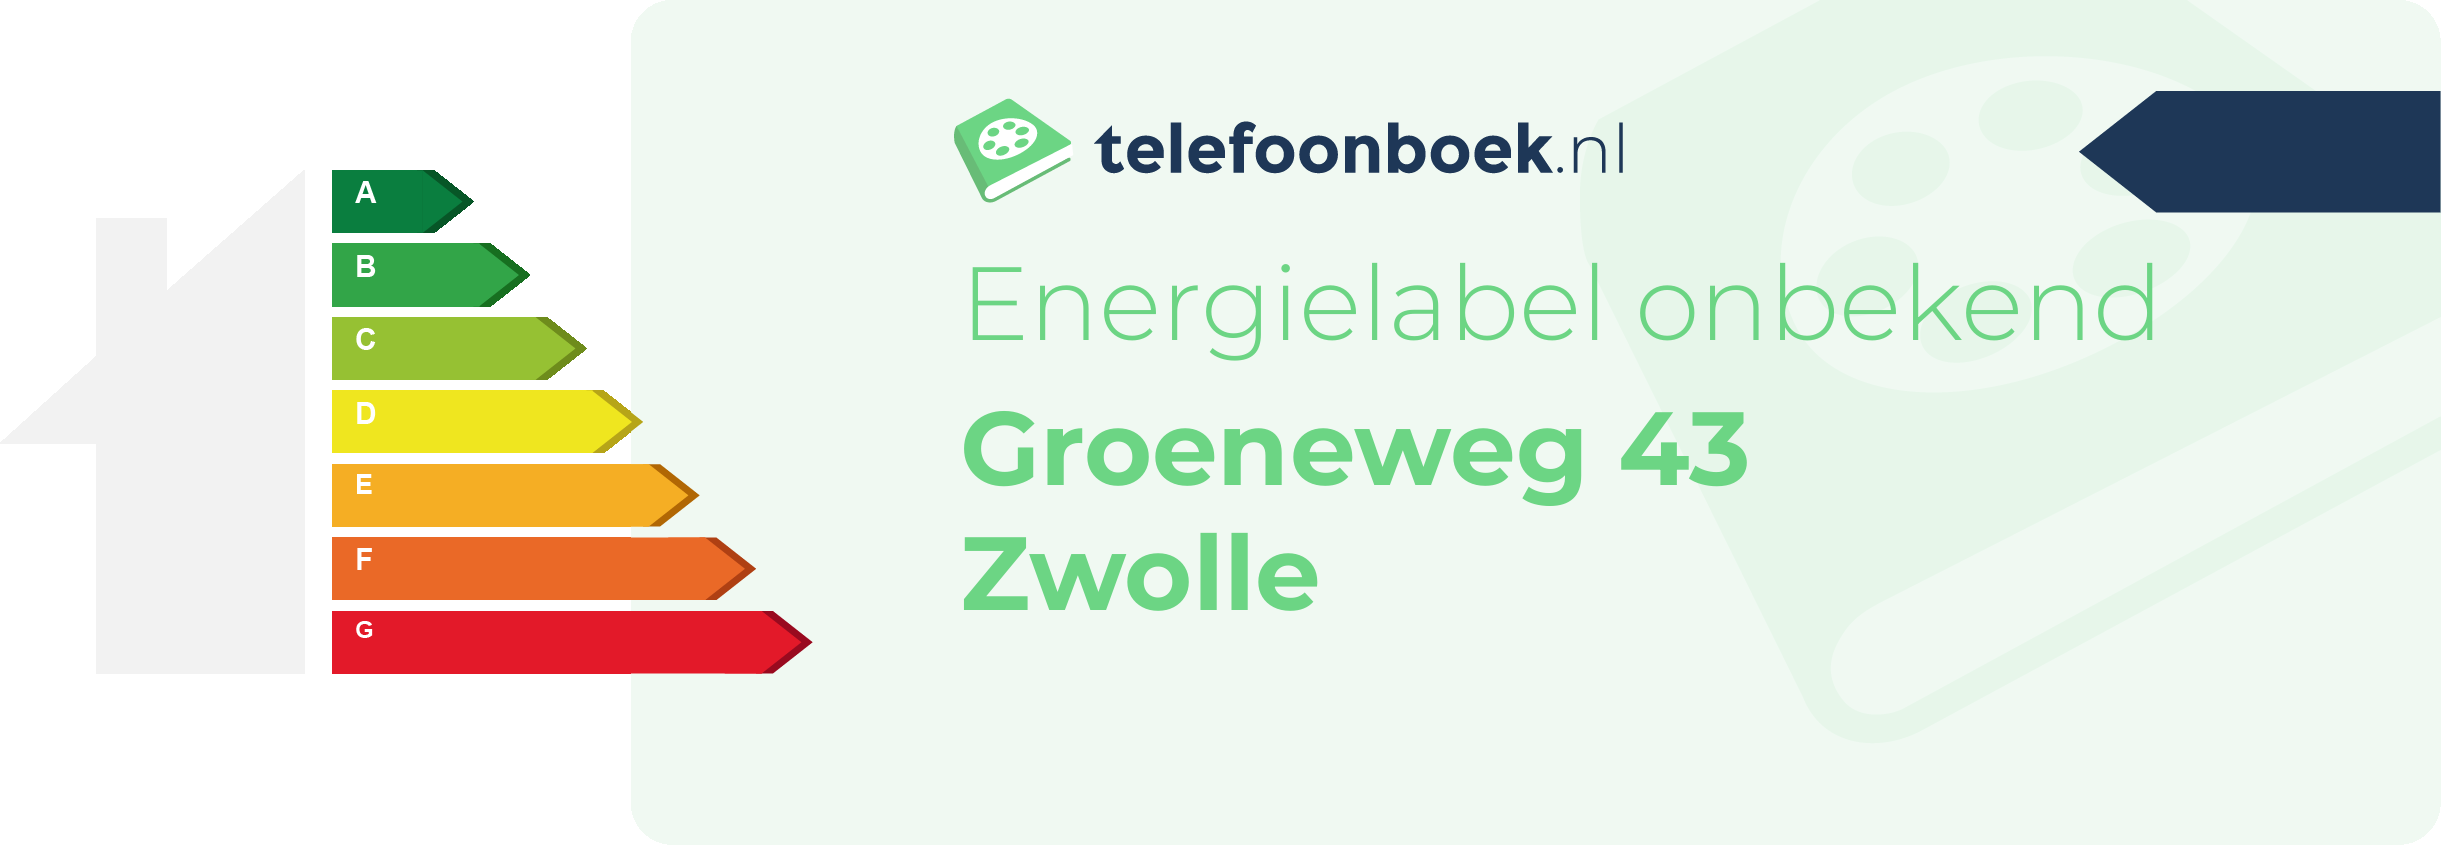 Energielabel Groeneweg 43 Zwolle